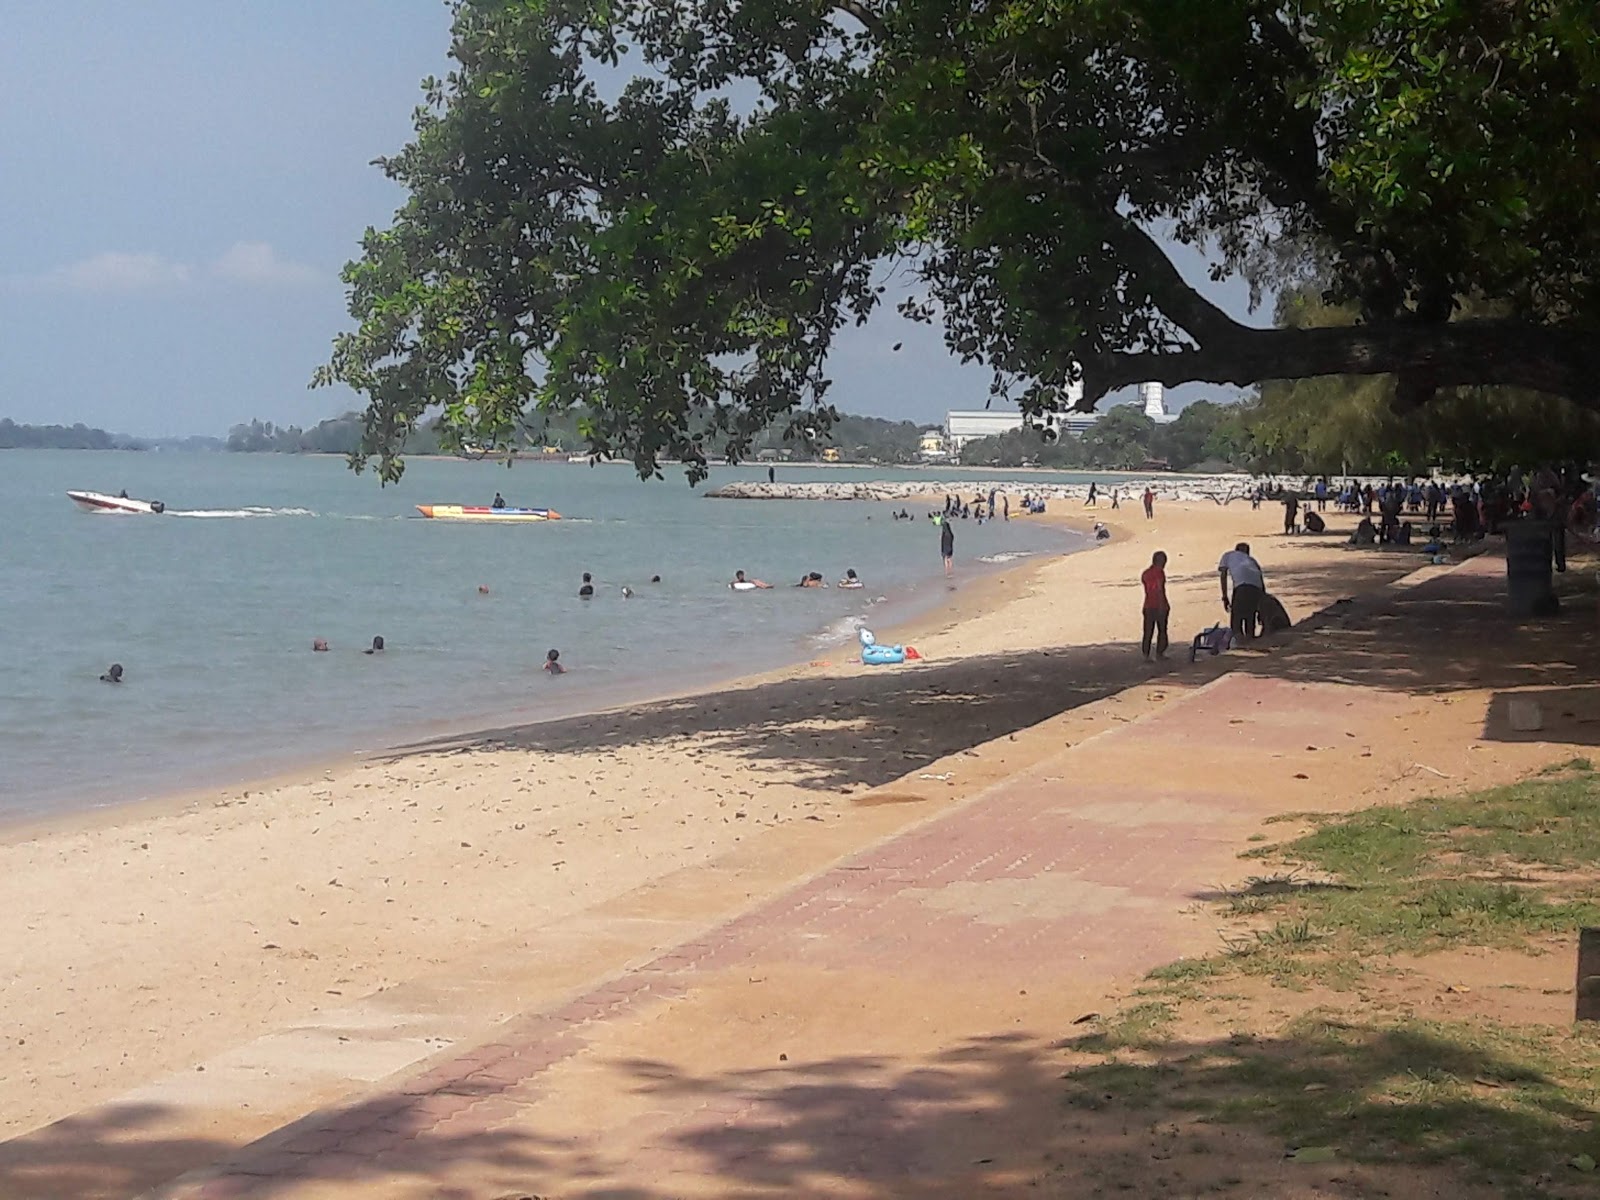 Sg. Tuang Beach'in fotoğrafı geniş plaj ile birlikte